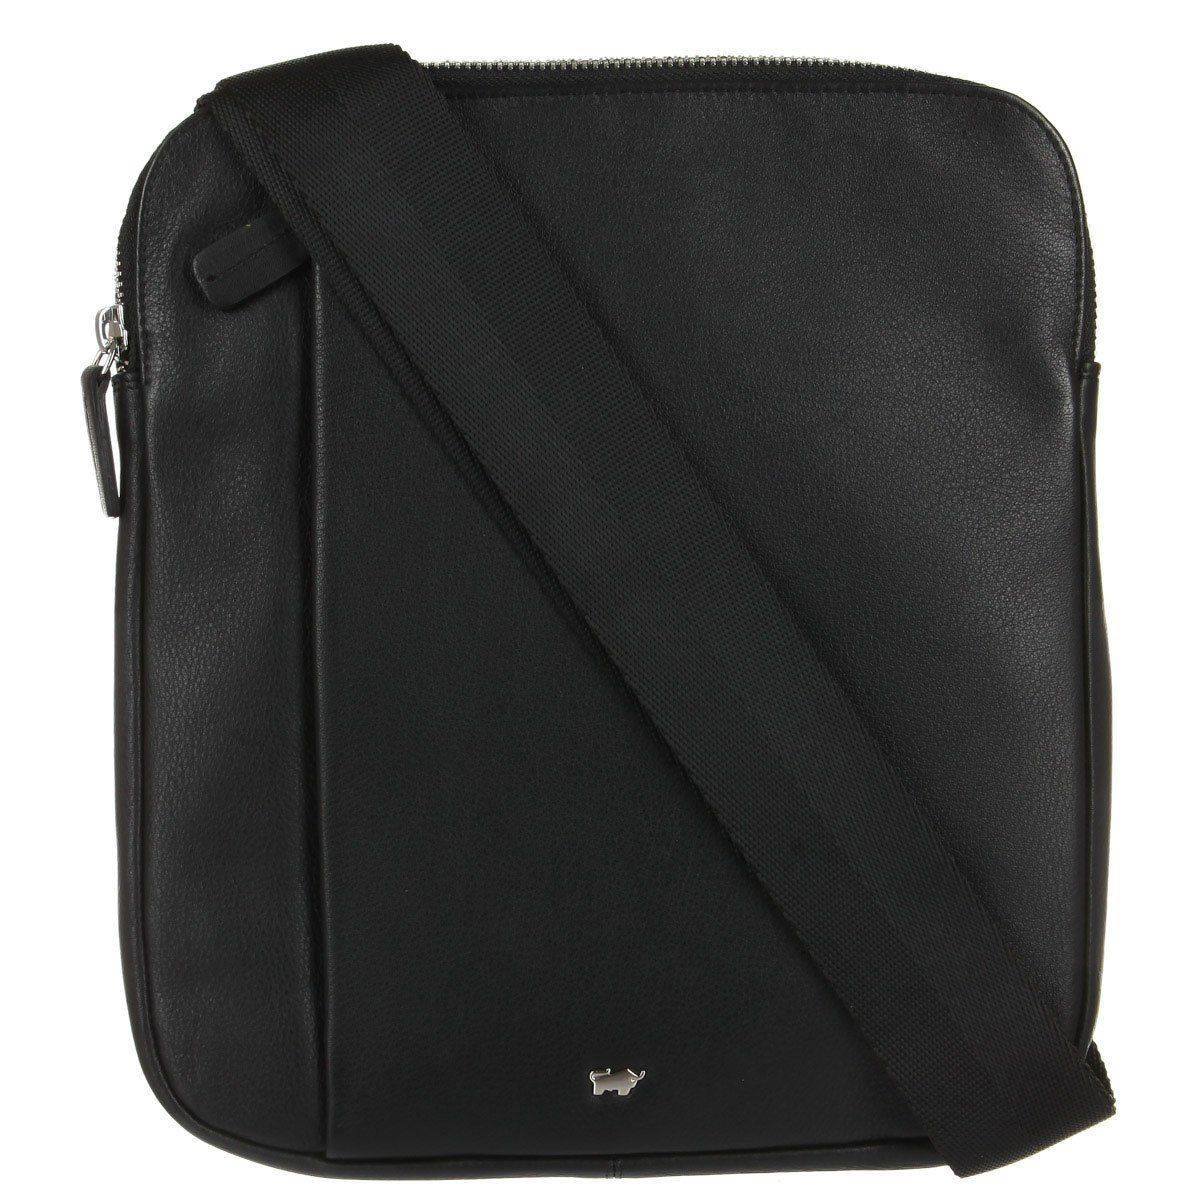 Сумка репортер Braun Buffel GOLF Shoulder Bag M 92562, цвет черный, размер ONE SIZE - фото 1